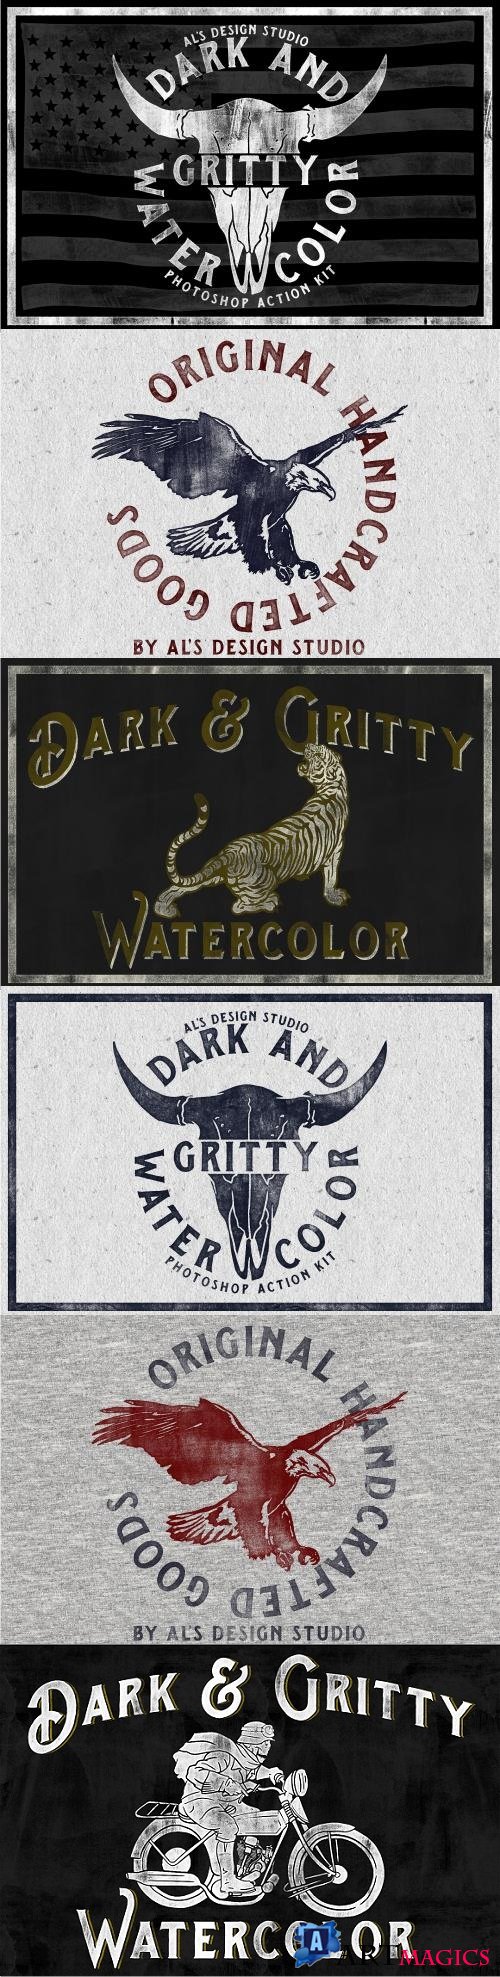 AL's Dark & Gritty Watercolor Action - 1952483